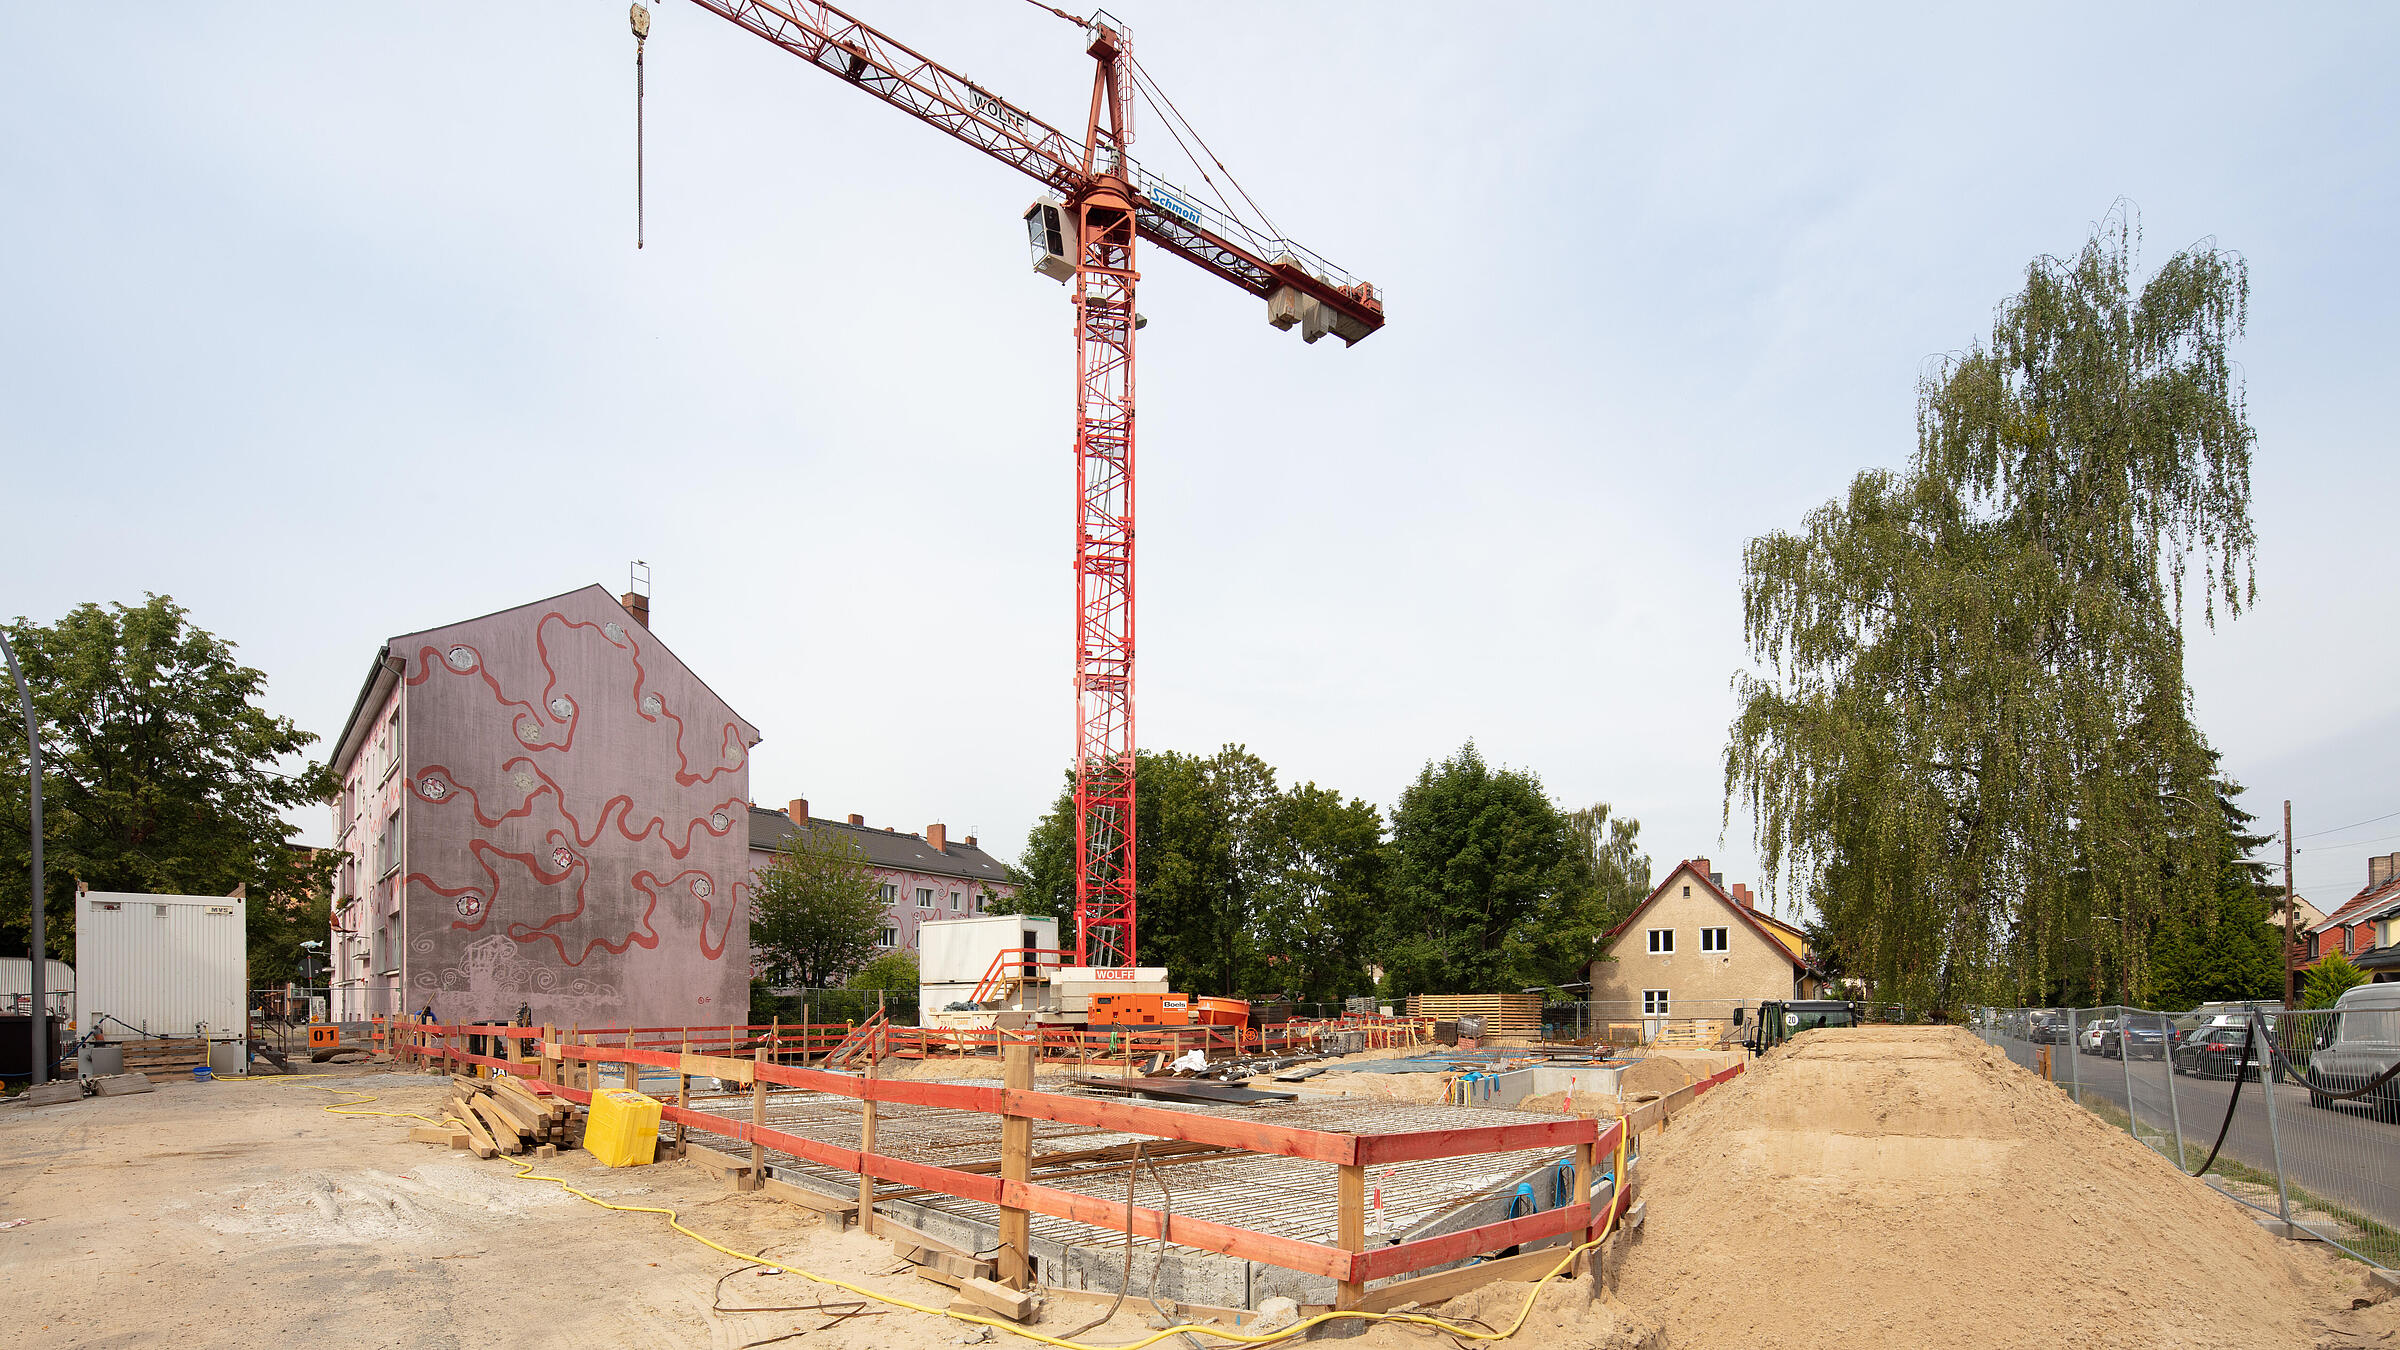 Außenaufnahme aus dem Juni 2019 zeigt die Baustelle der Gustav-Adolf-Str. mit einem Erdaushub und einem Kran.